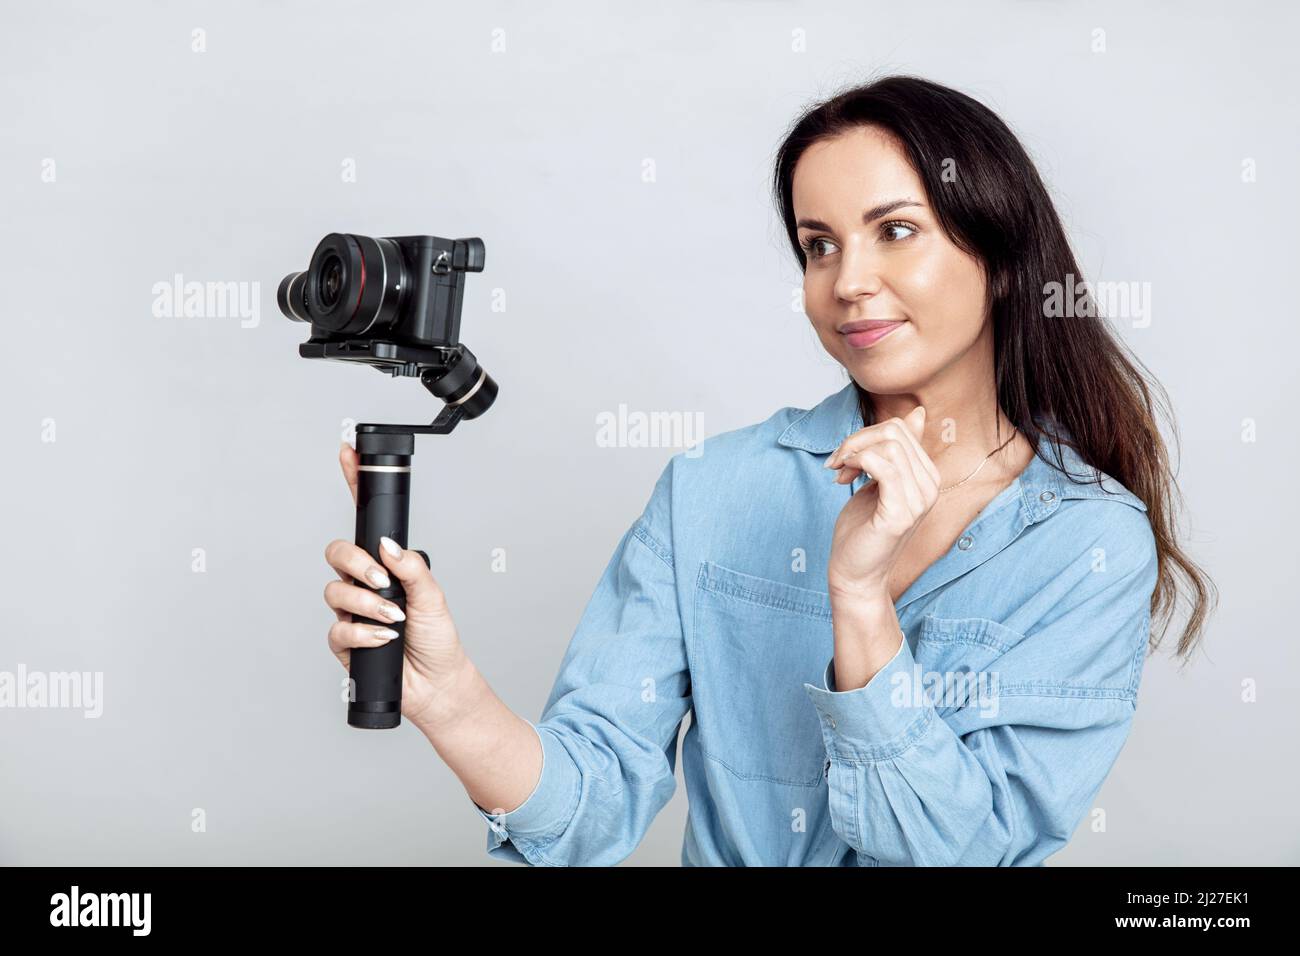 Jeune femme attirante prend un selfie en utilisant la caméra sur la nacelle Banque D'Images